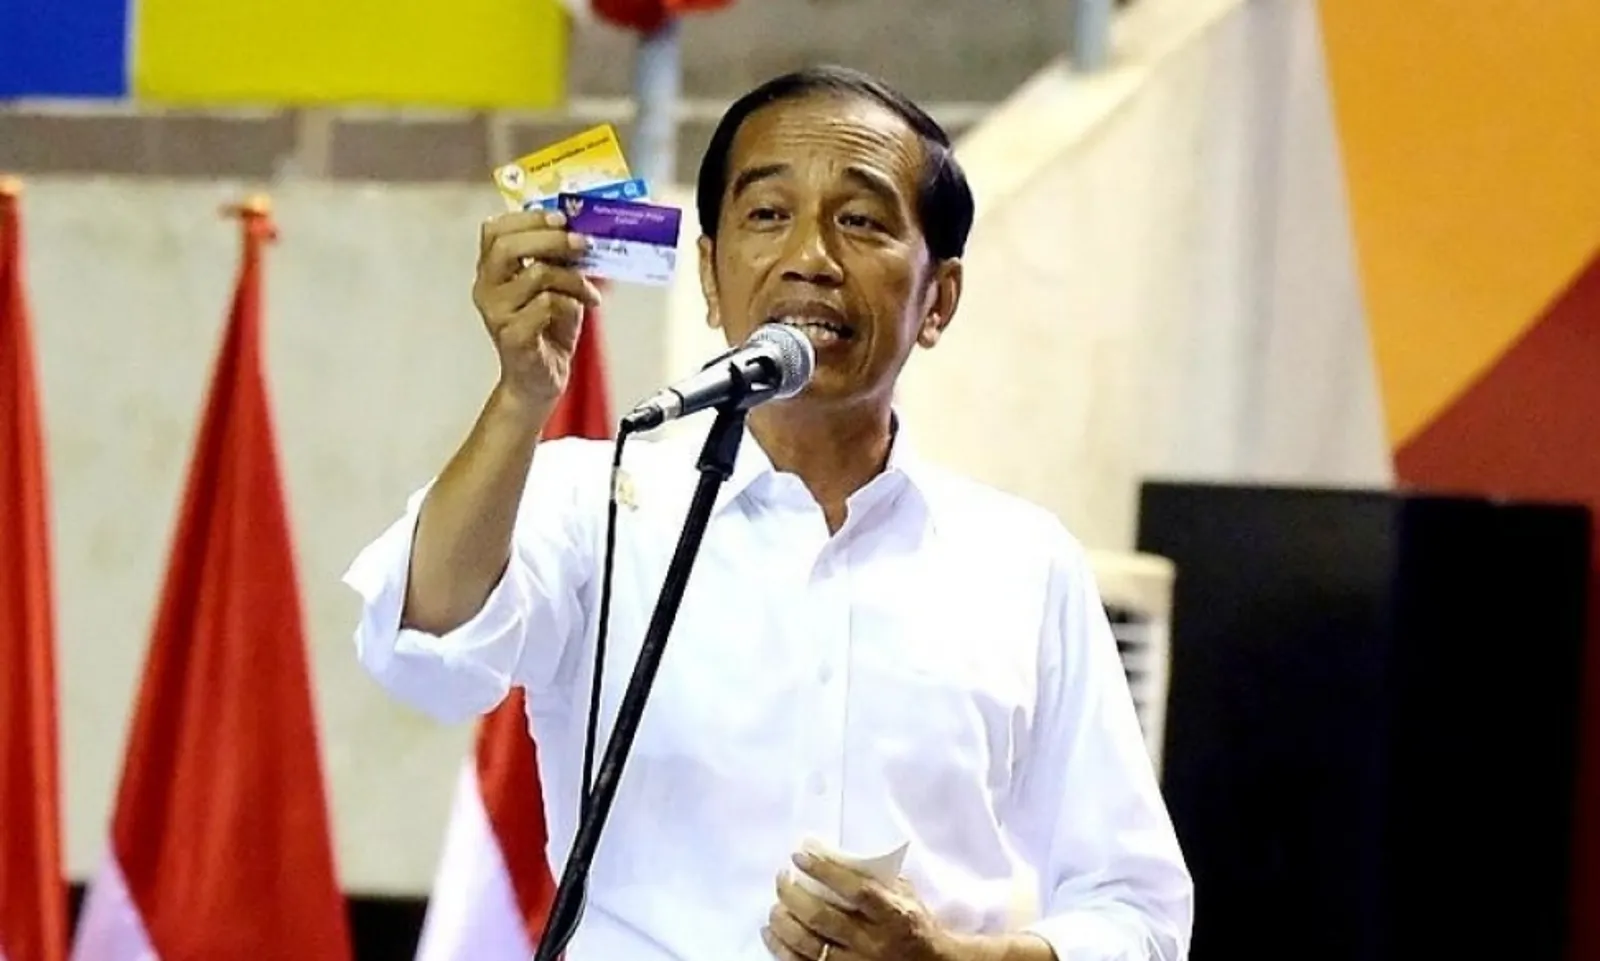 Imbas Corona, Jokowi Mempercepat Perilisan Kartu Pra Kerja 